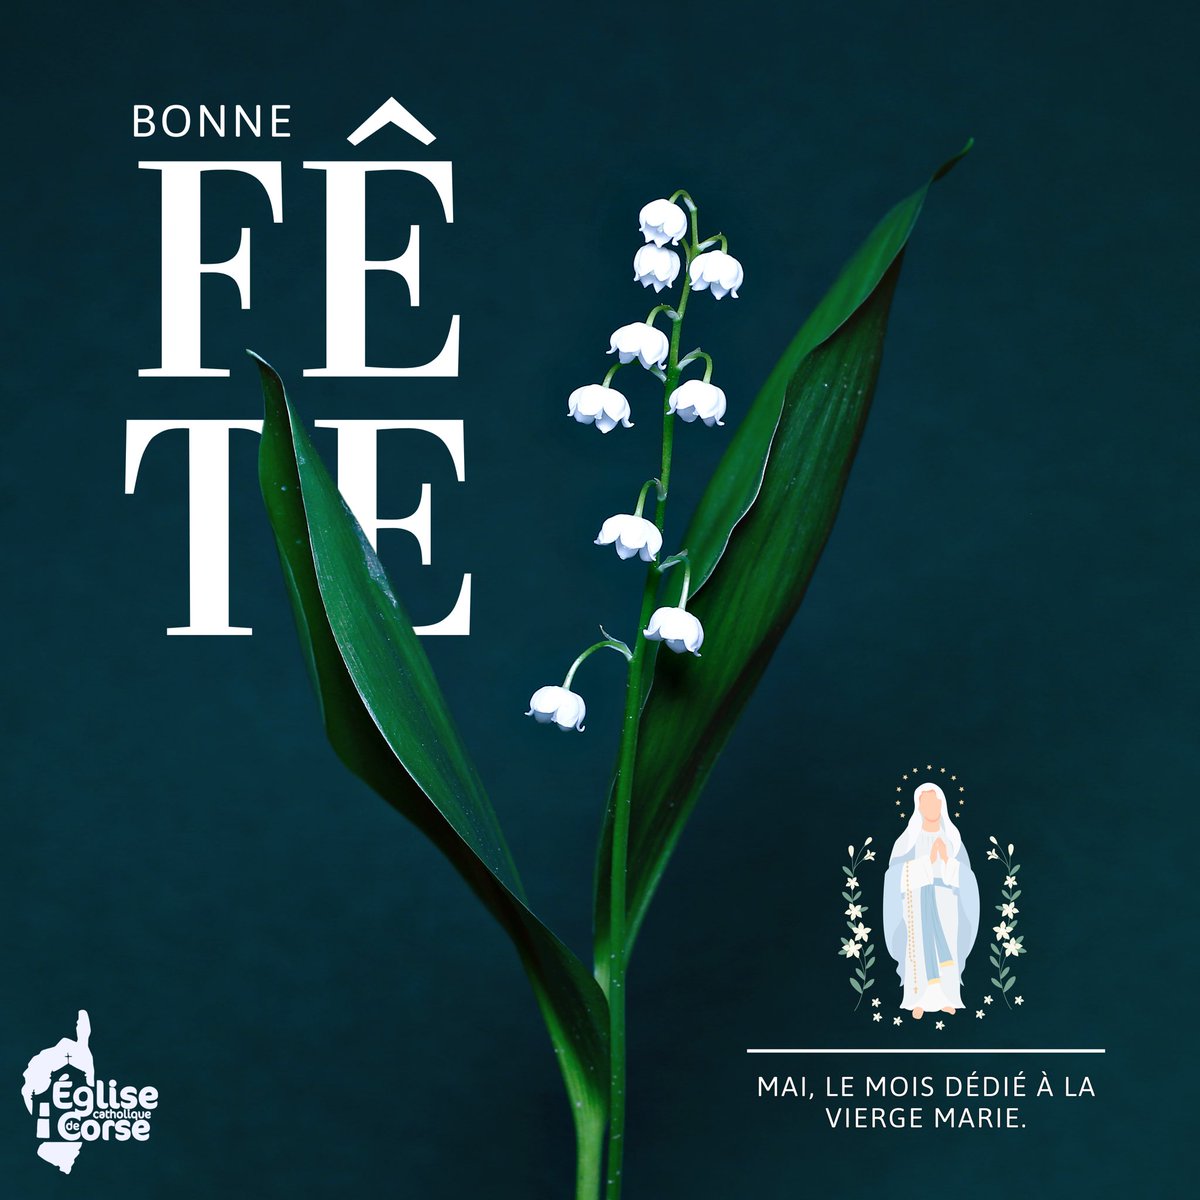 Bonne fête en ce mois de mai dédié à la Vierge Marie ! 🕊️ — #dioceseajaccio #eglisecatholiquedecorse #mai #moisdemarie #muguet #eglise #catholique #corsica